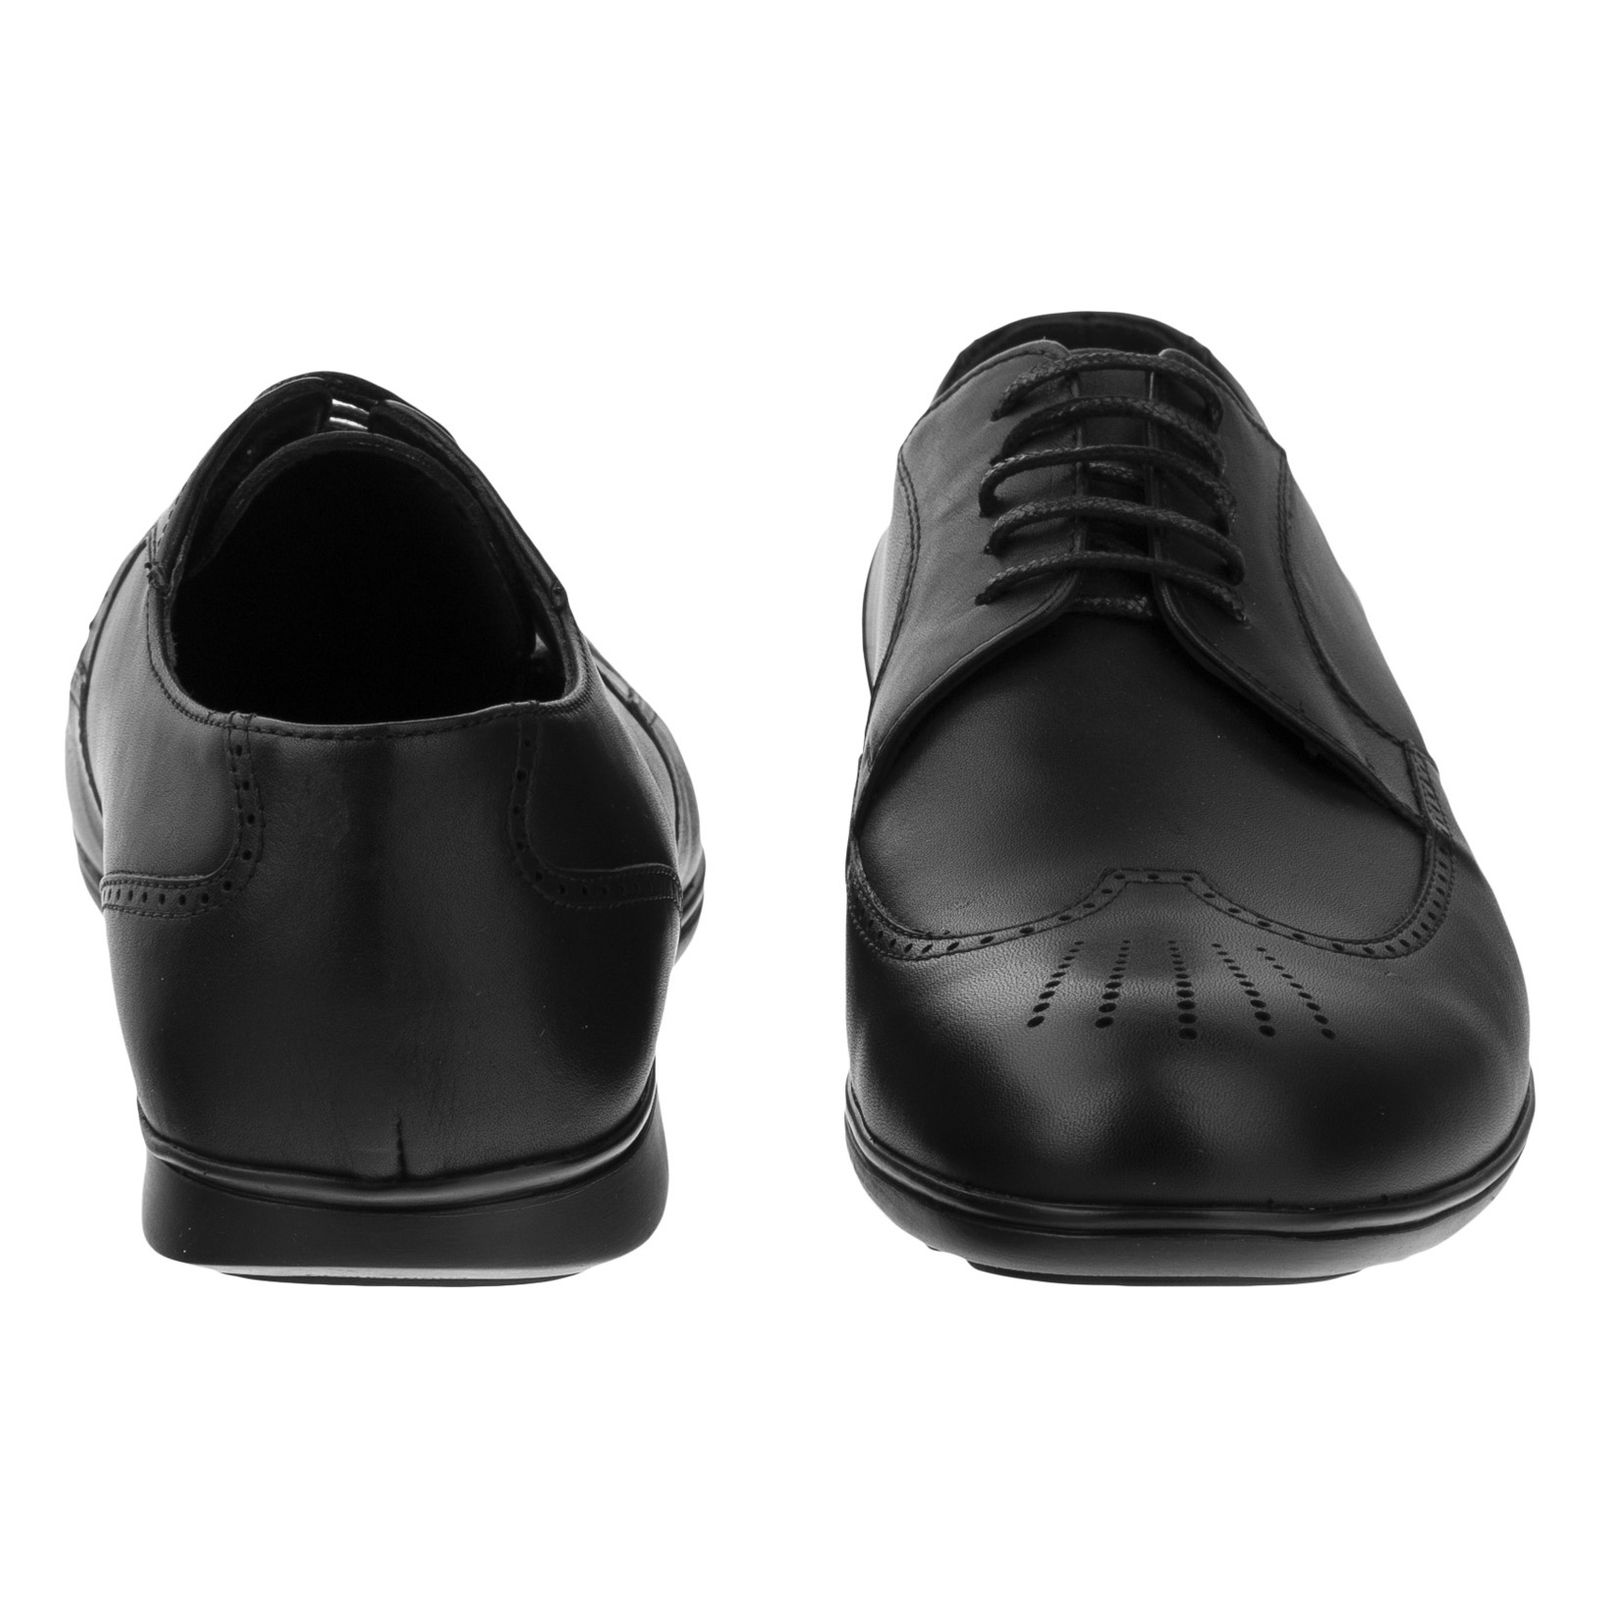 کفش مردانه گاندو مدل 99-701 - مشکی - 5